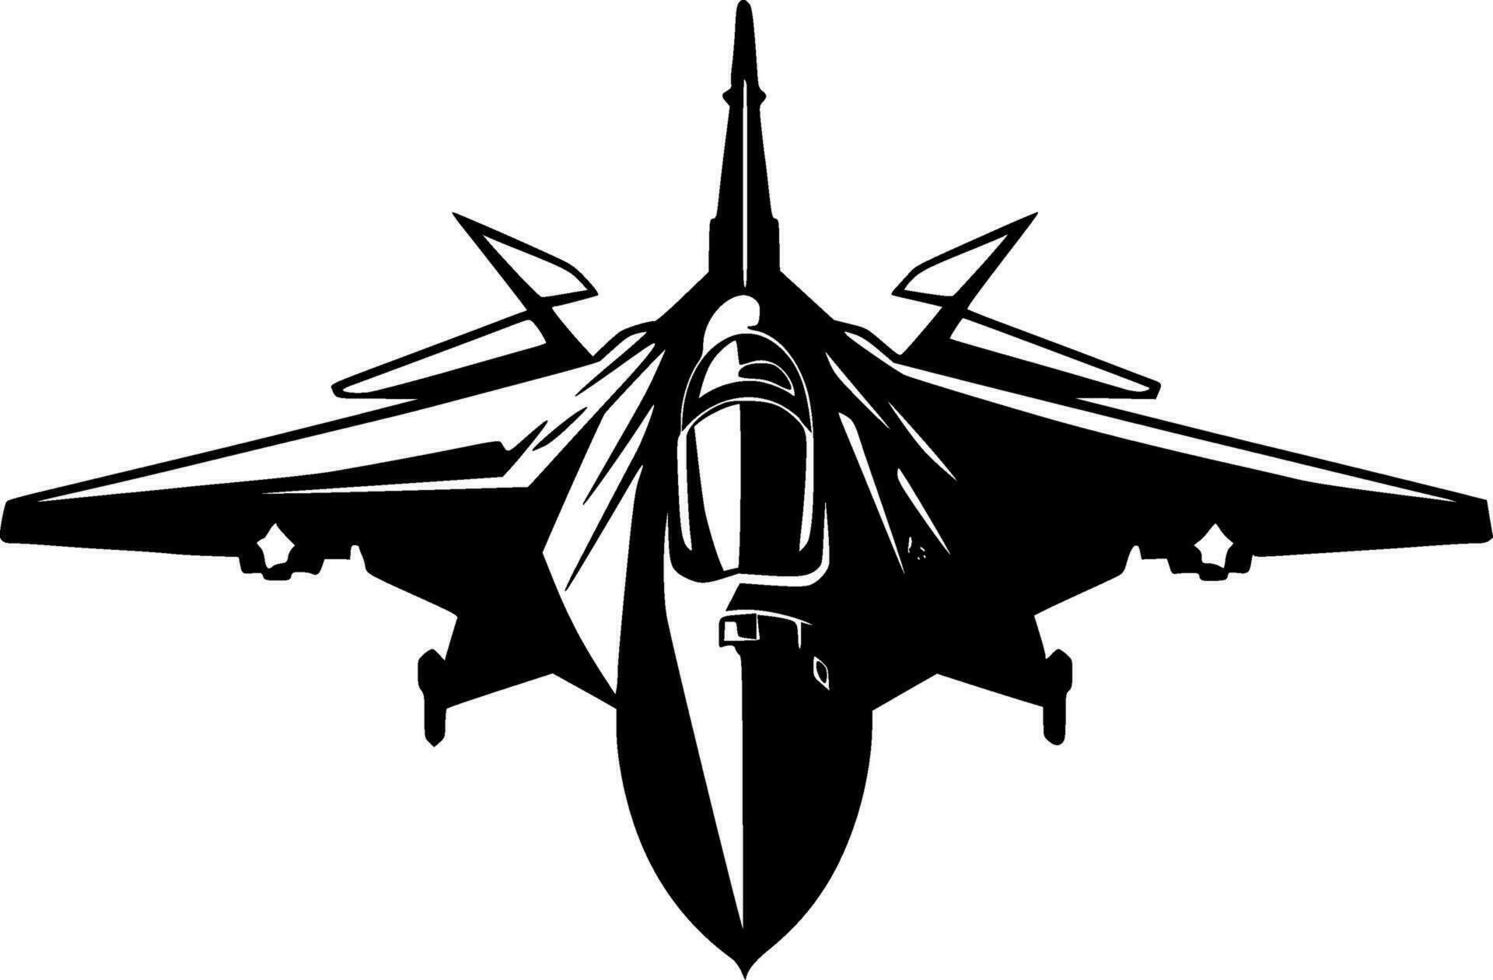 combattente Jet - minimalista e piatto logo - vettore illustrazione